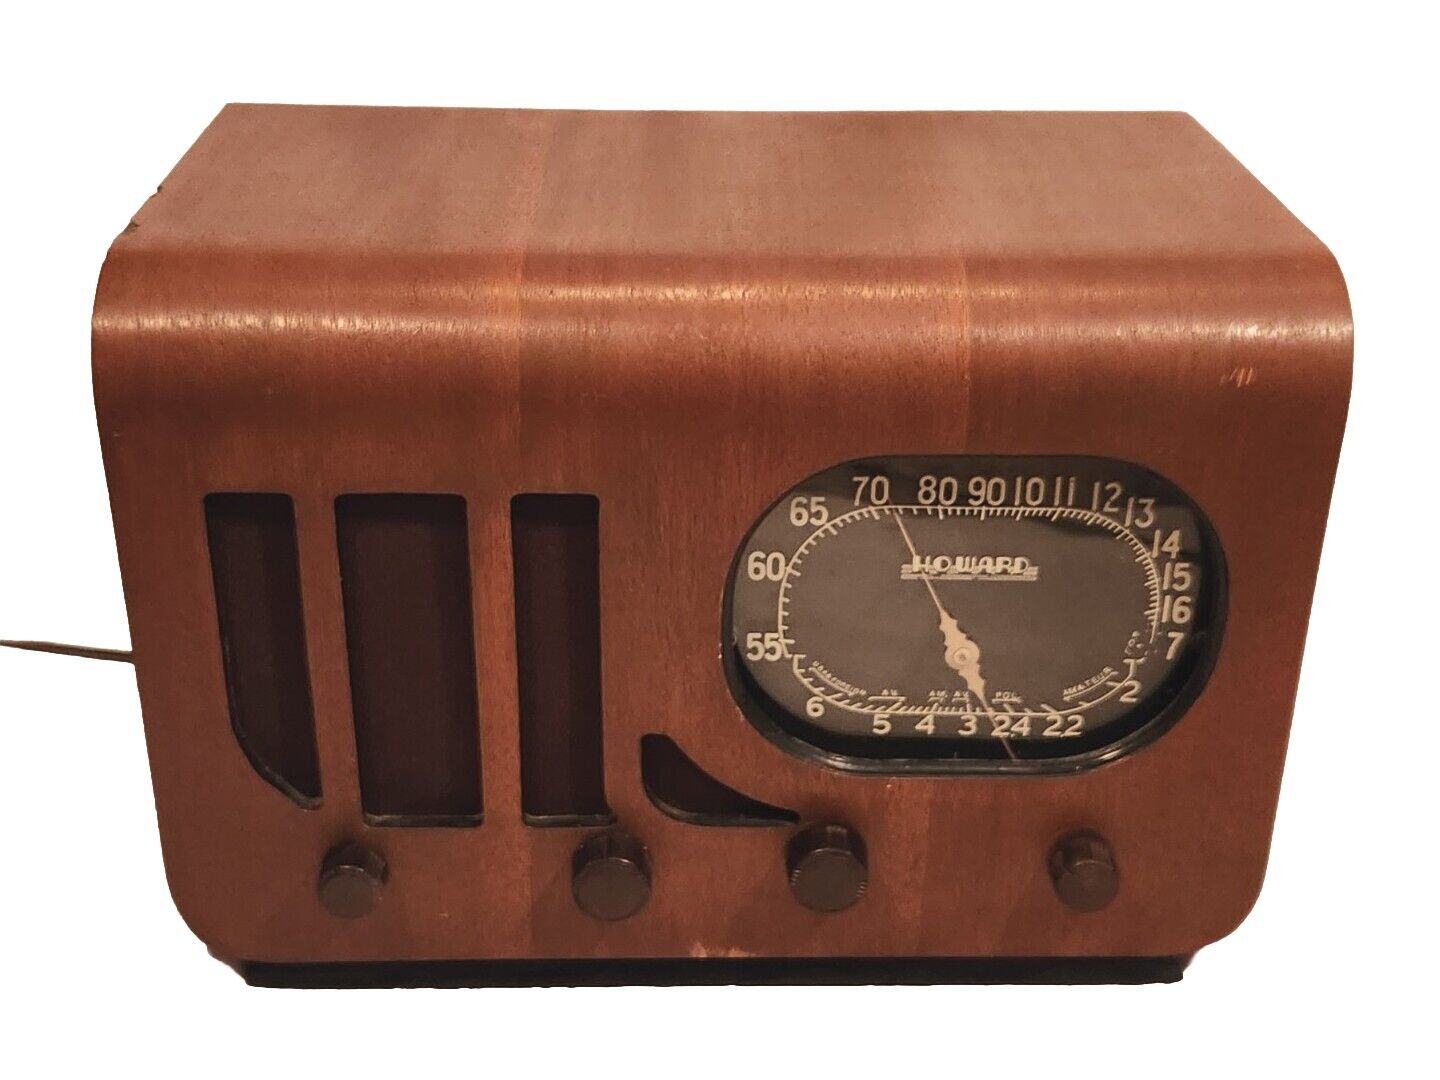 Rare Vtg Hard To Find Howard 225 Desktop Tube Radio 1946 Wood Case Working Orig